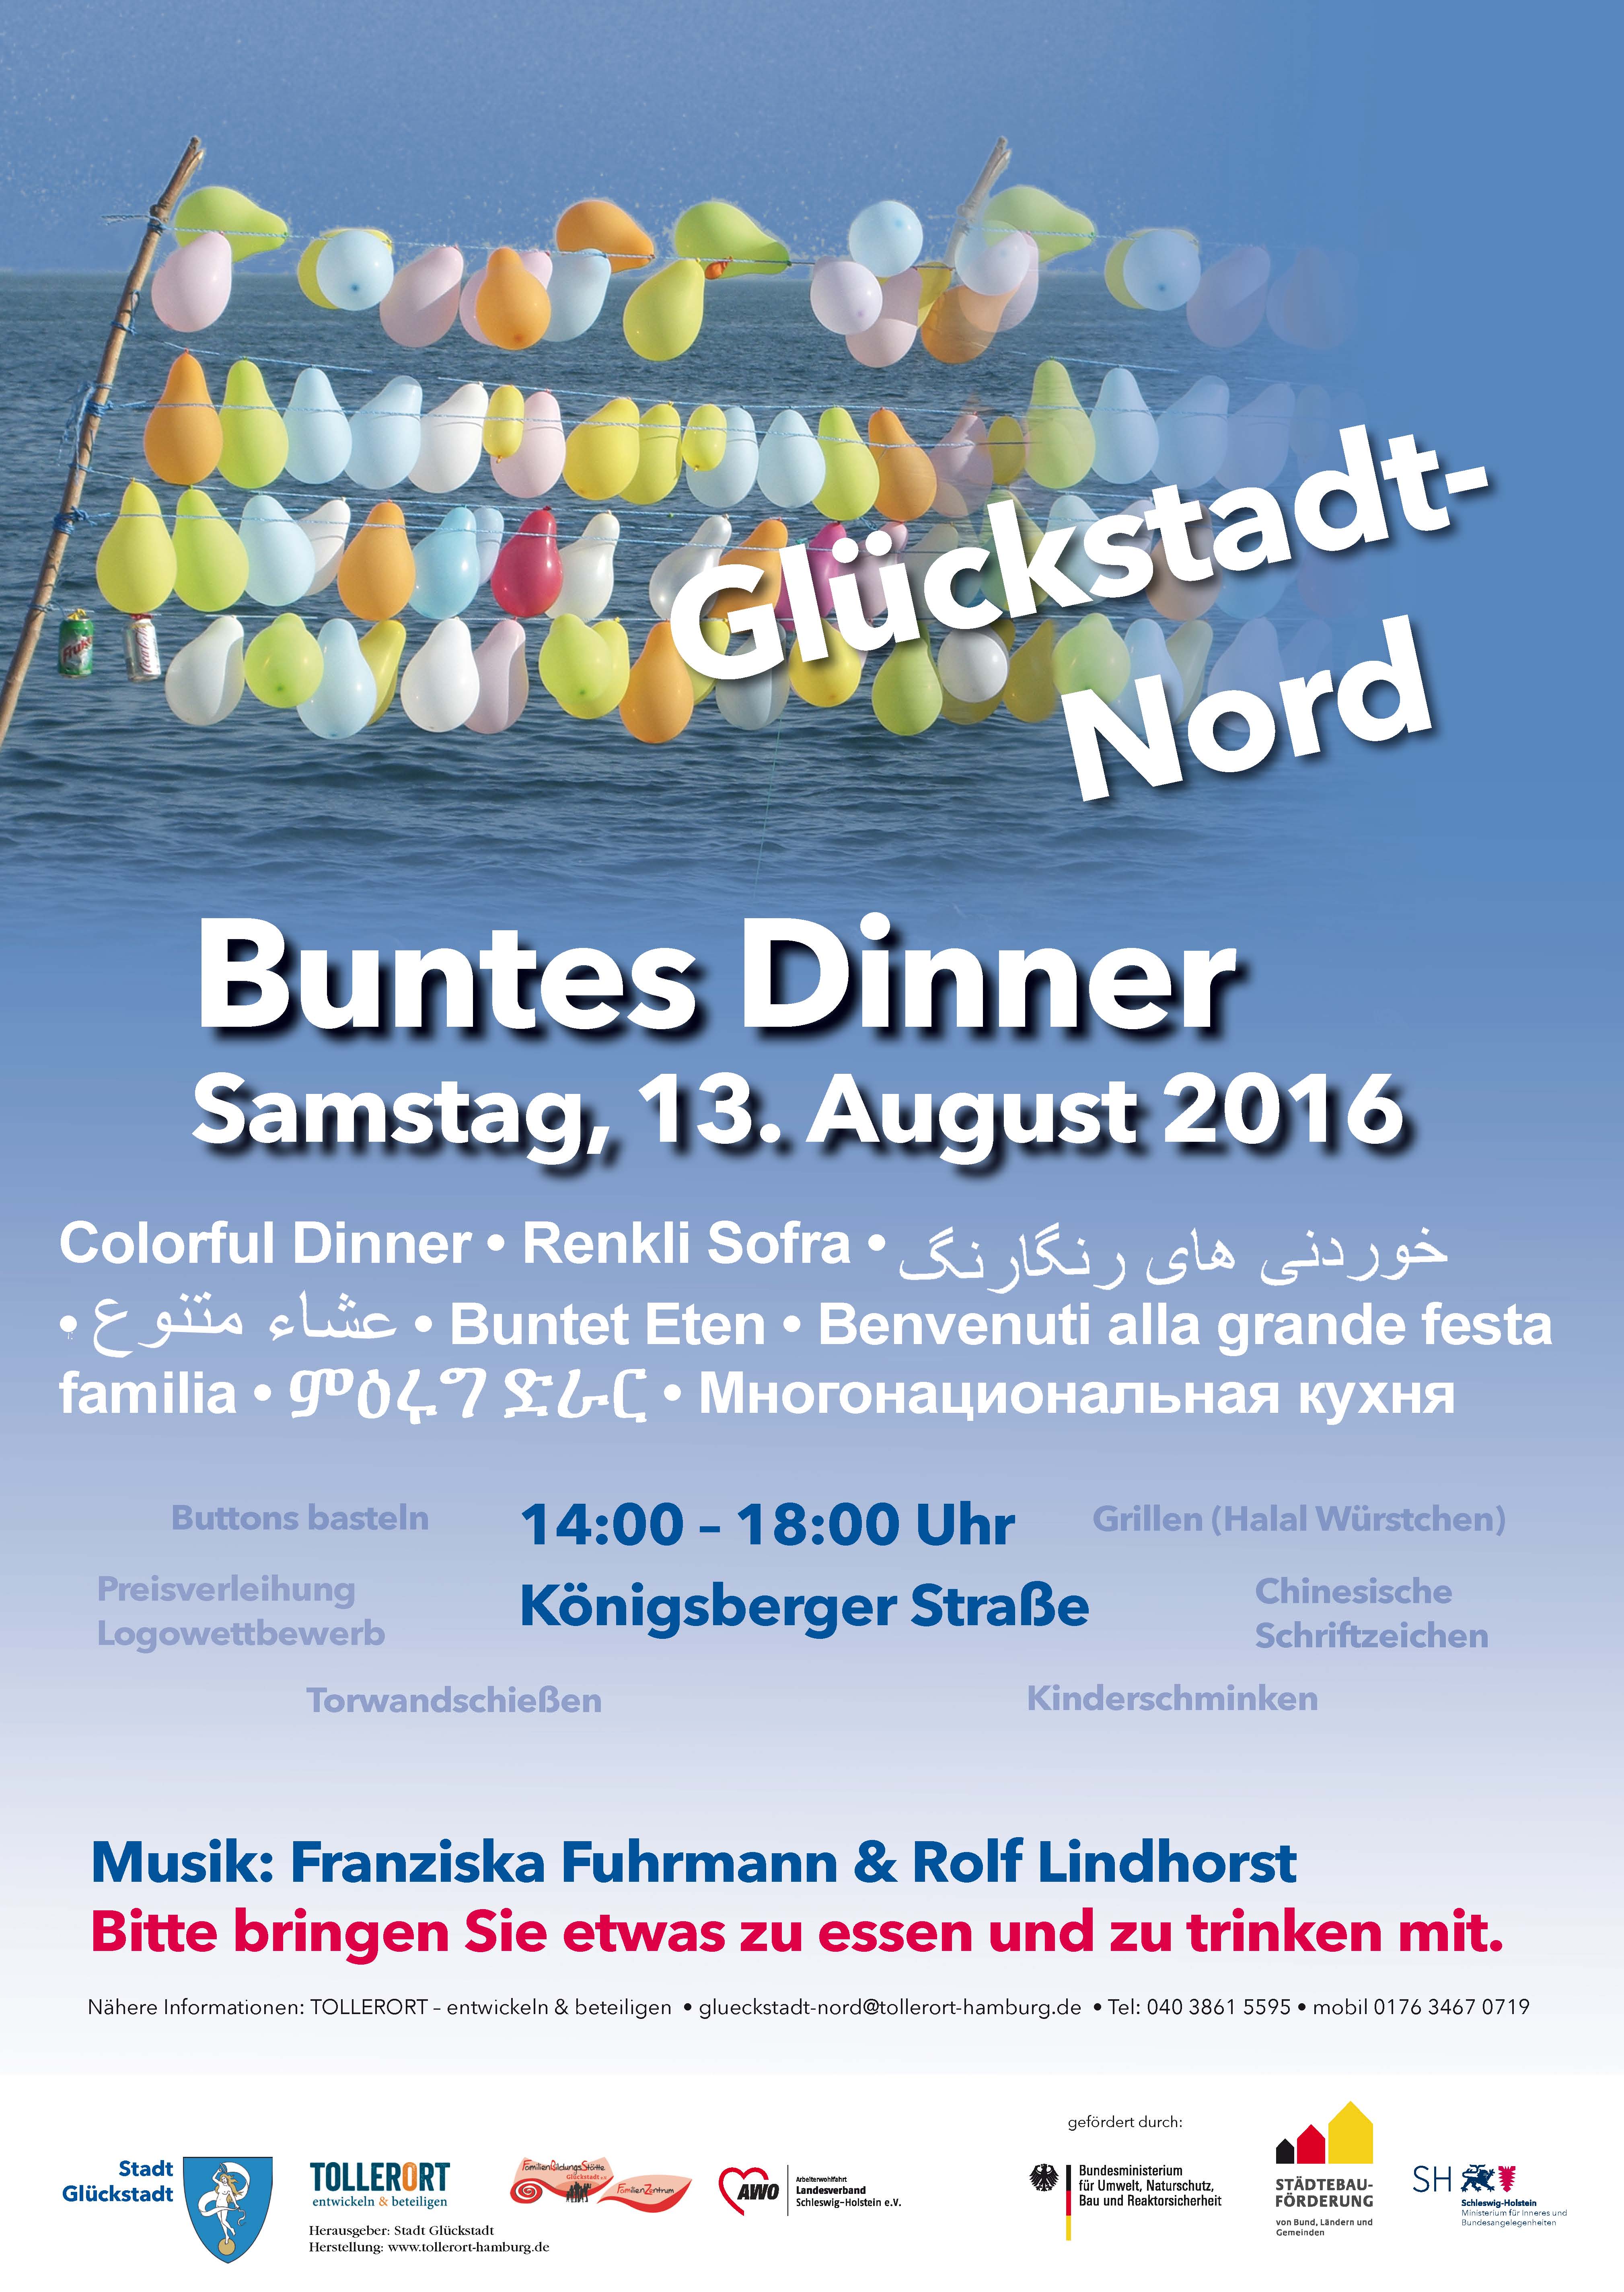 Buntes Dinner und Familienfest in Glückstadt-Nord